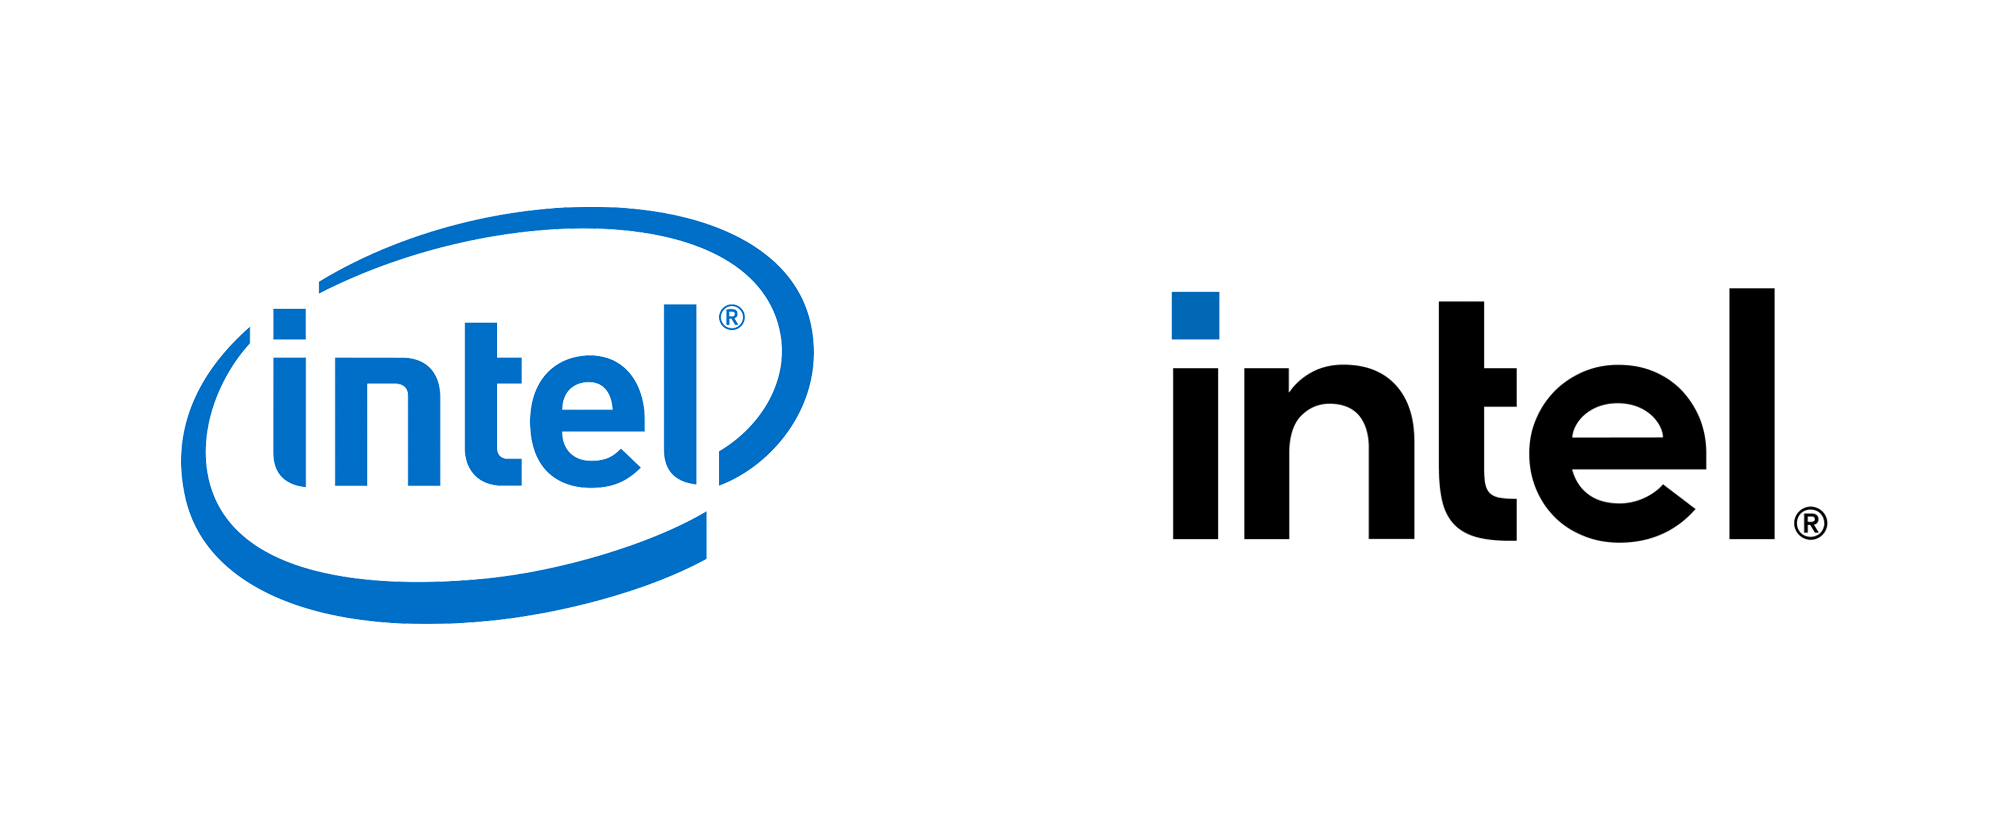 Intel New logo. Intel New logo 2020. Intel логотип 2021. Логотип интела. Интел логотип